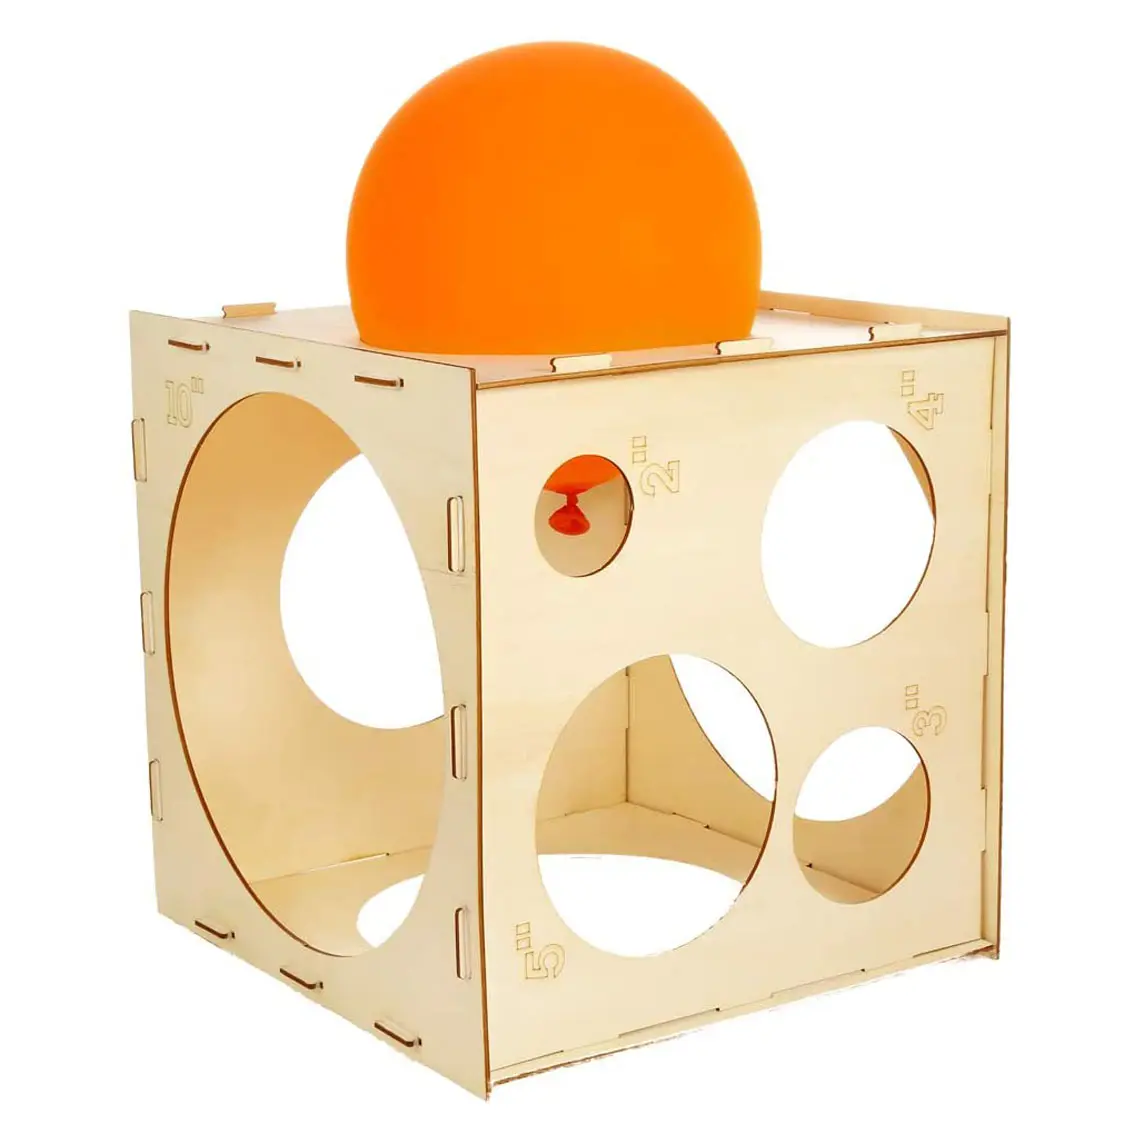 Globo personalizado arcos columnas globo tamaño herramienta de medición plegable madera globo Sizer caja cubo para Decoración